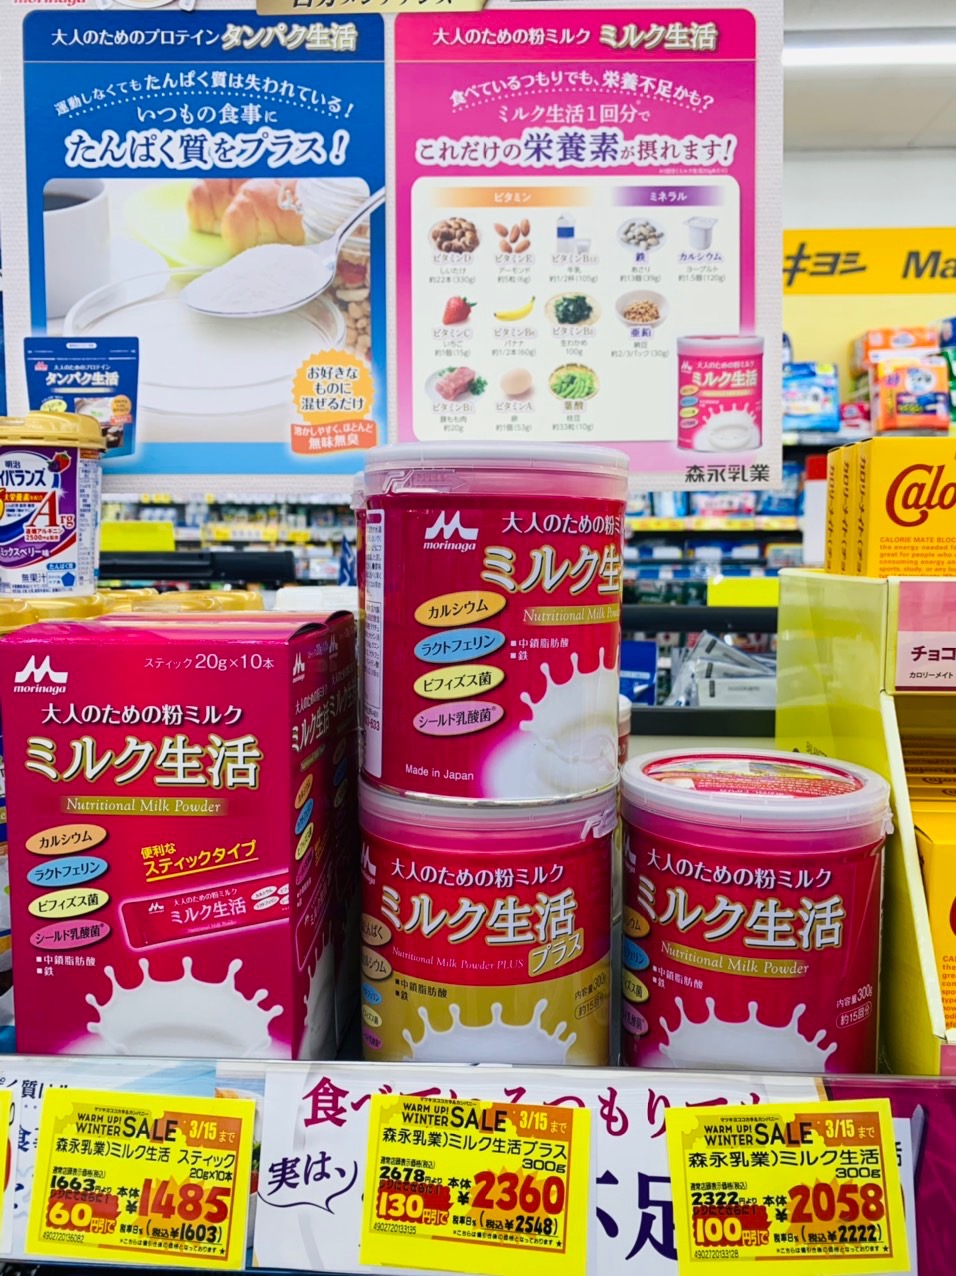 Sữa dinh dưỡng cho người lớn Morinaga Plus hàng nội địa Nhật {{ w: 478, h: 638 }}